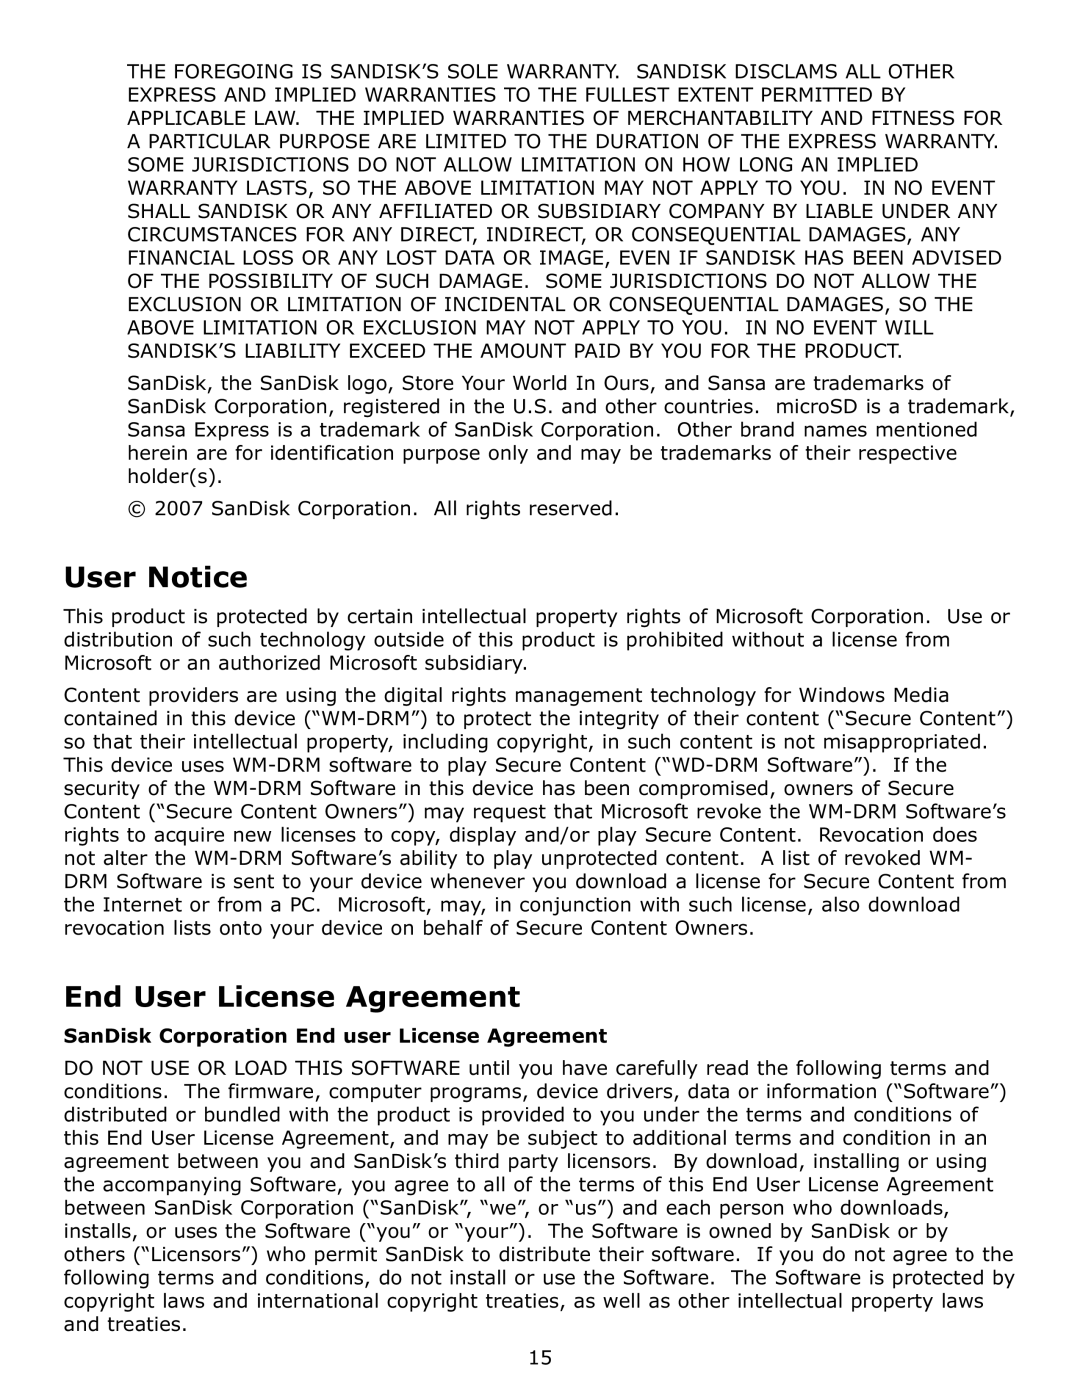 SanDisk c200 user manual User Notice, End User License Agreement, SanDisk Corporation End user License Agreement 